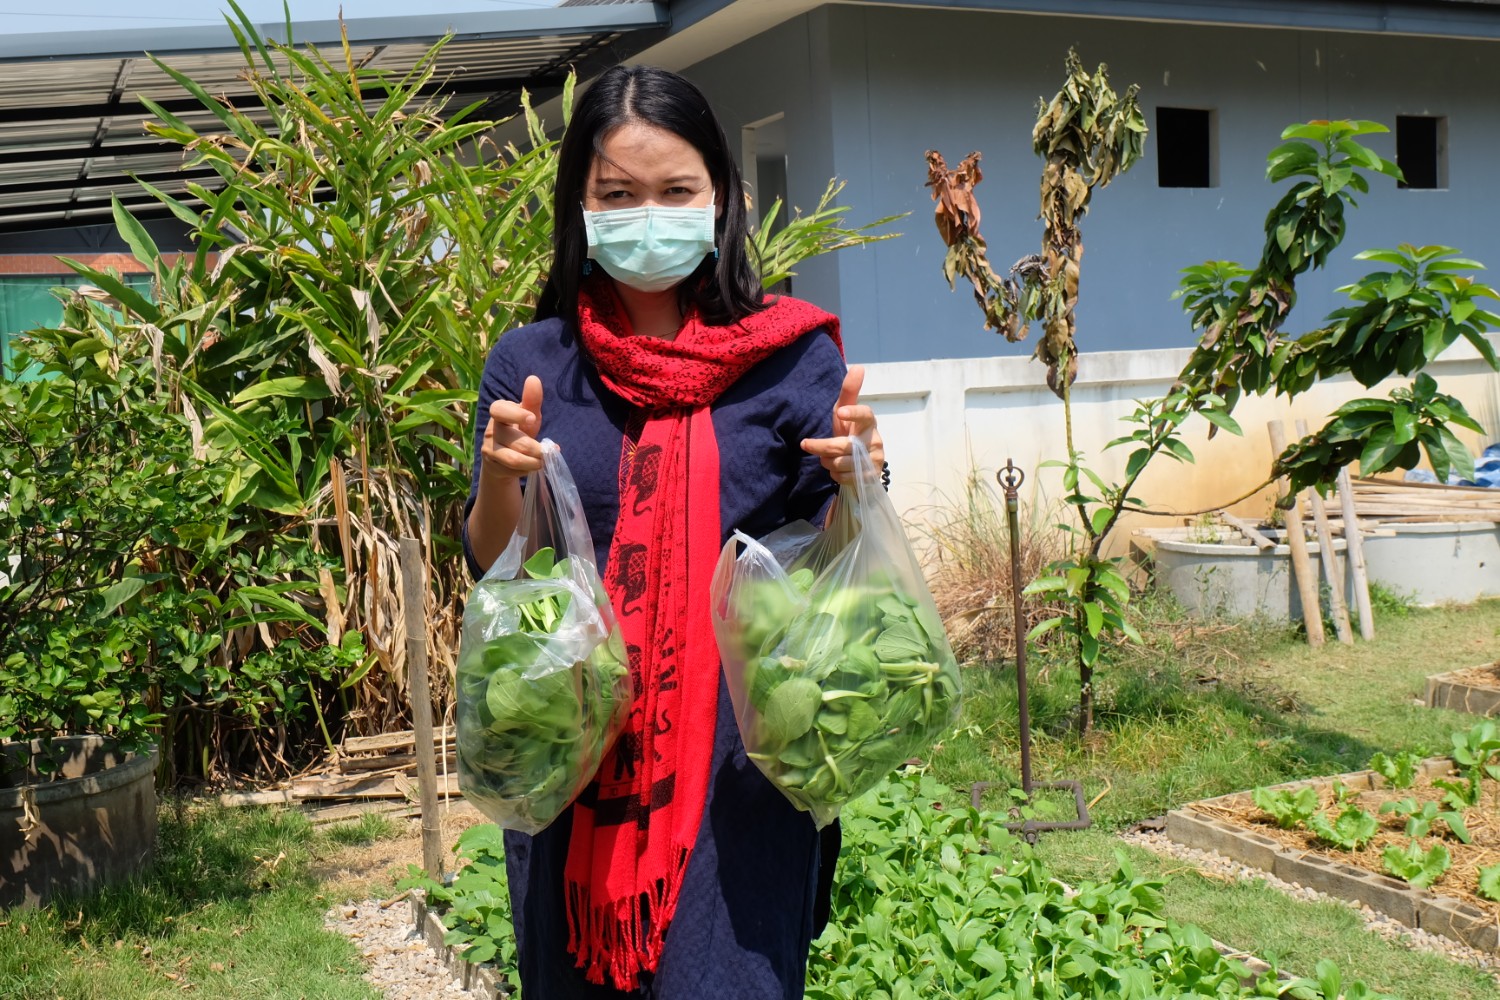 แชร์ประสบการณ์ “ปลูกผักกวางตุ้งฮ่องเต้” วิถีประหยัด ปลอดสารพิษ กินกันได้ทั้งบ้าน